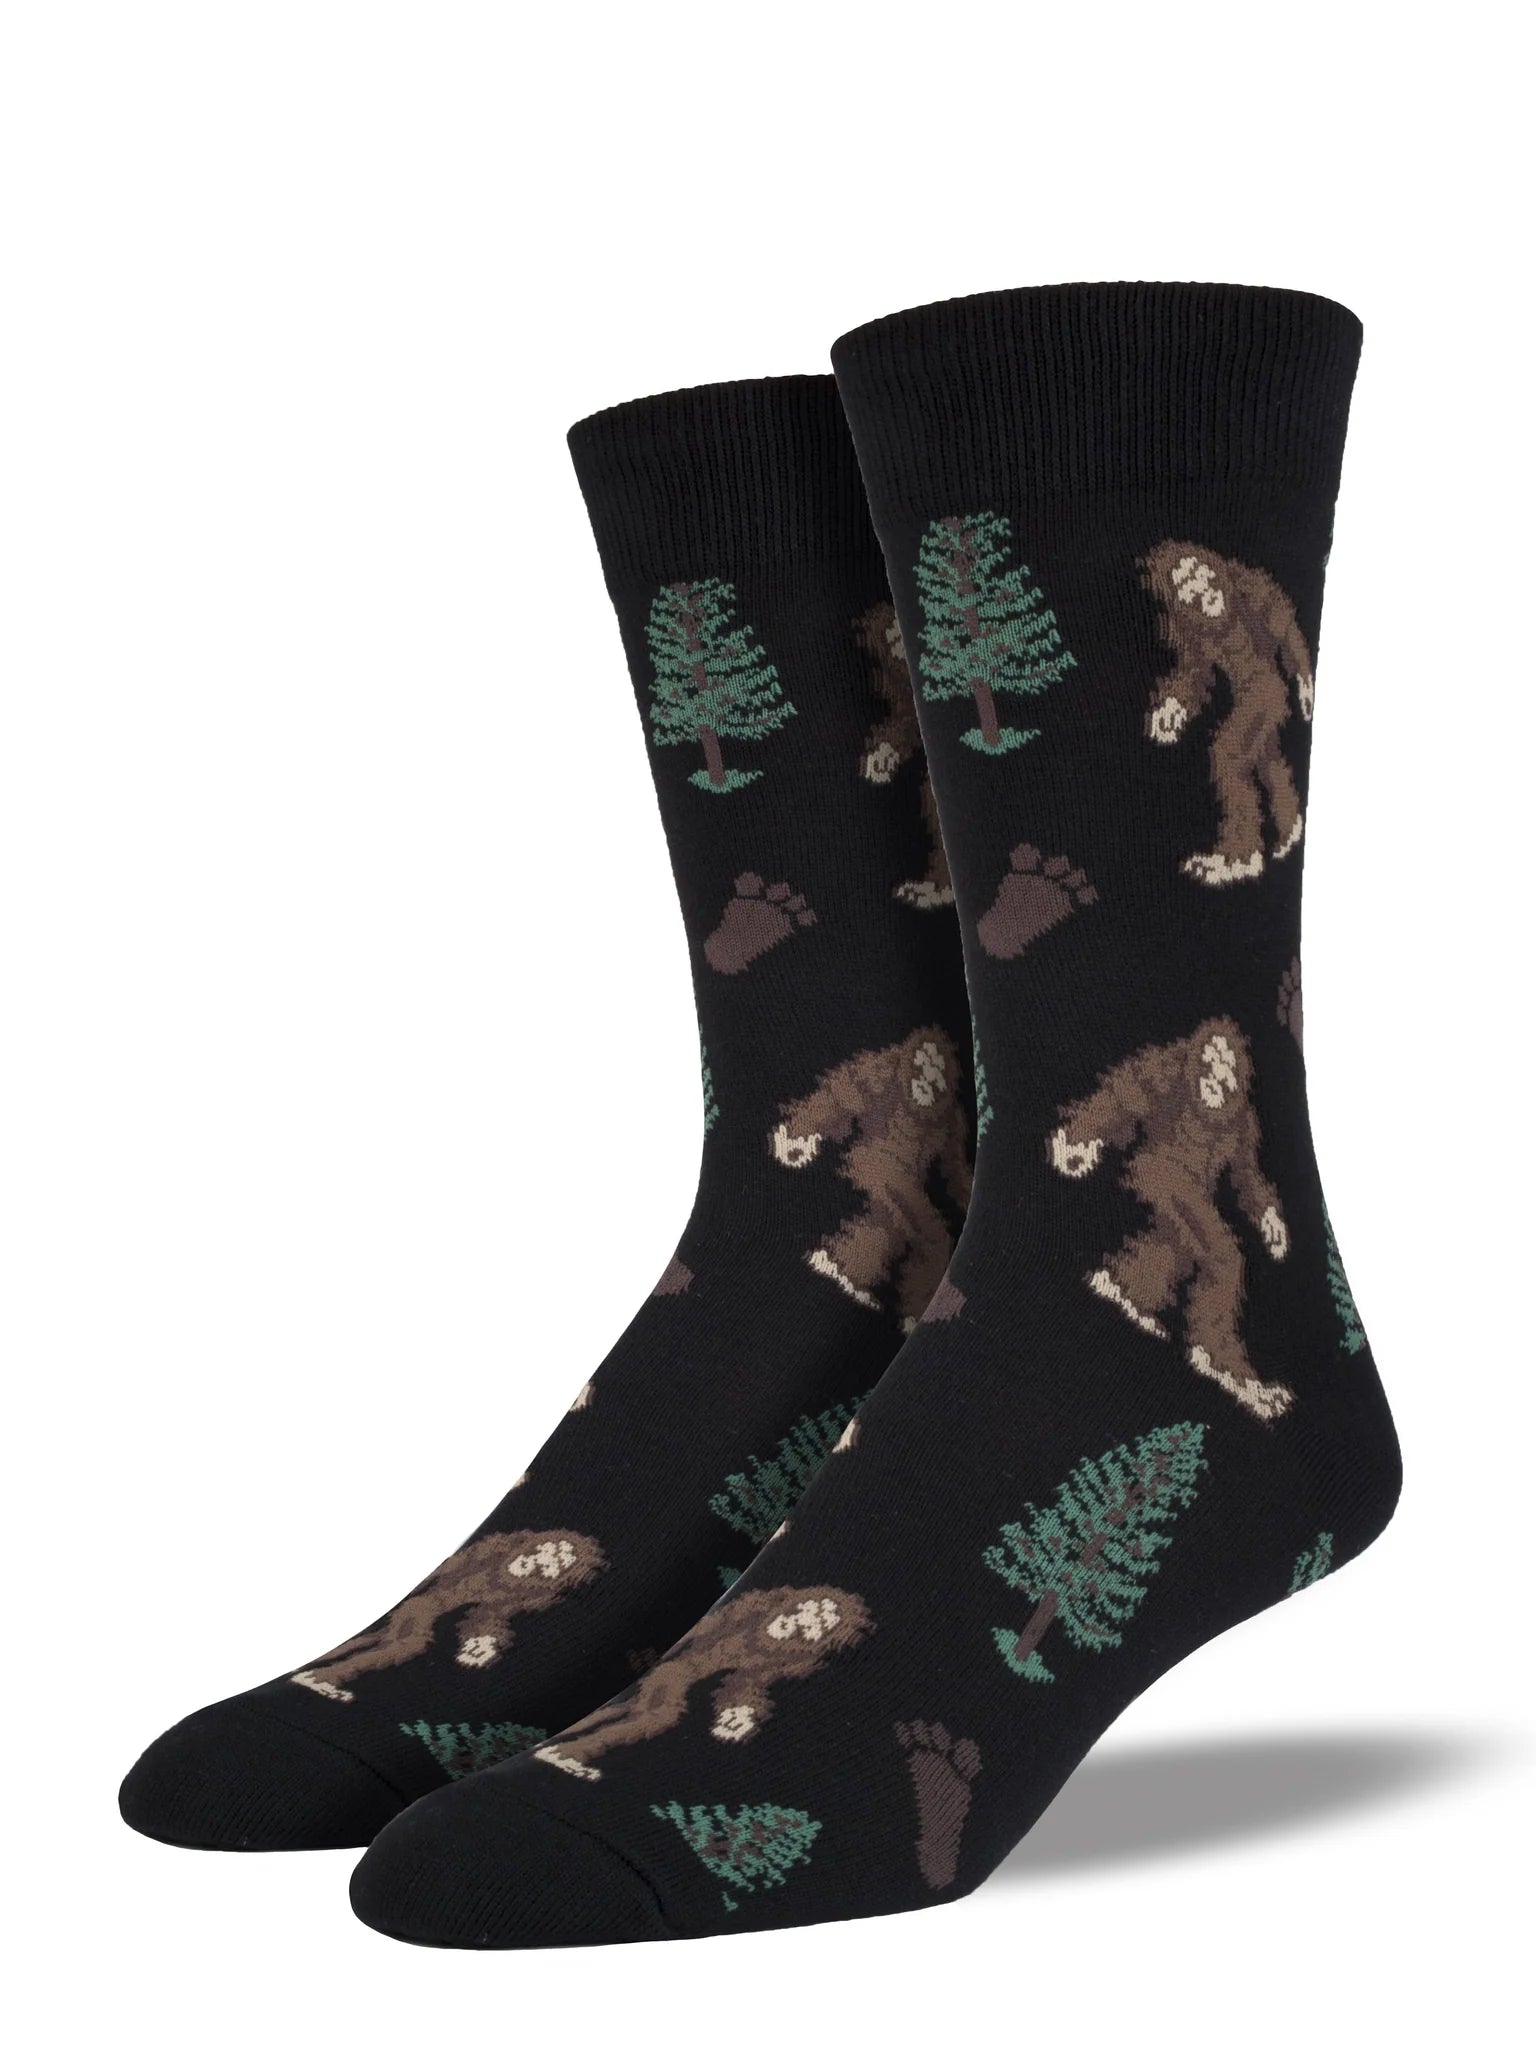 Men's Bigfoot Socks